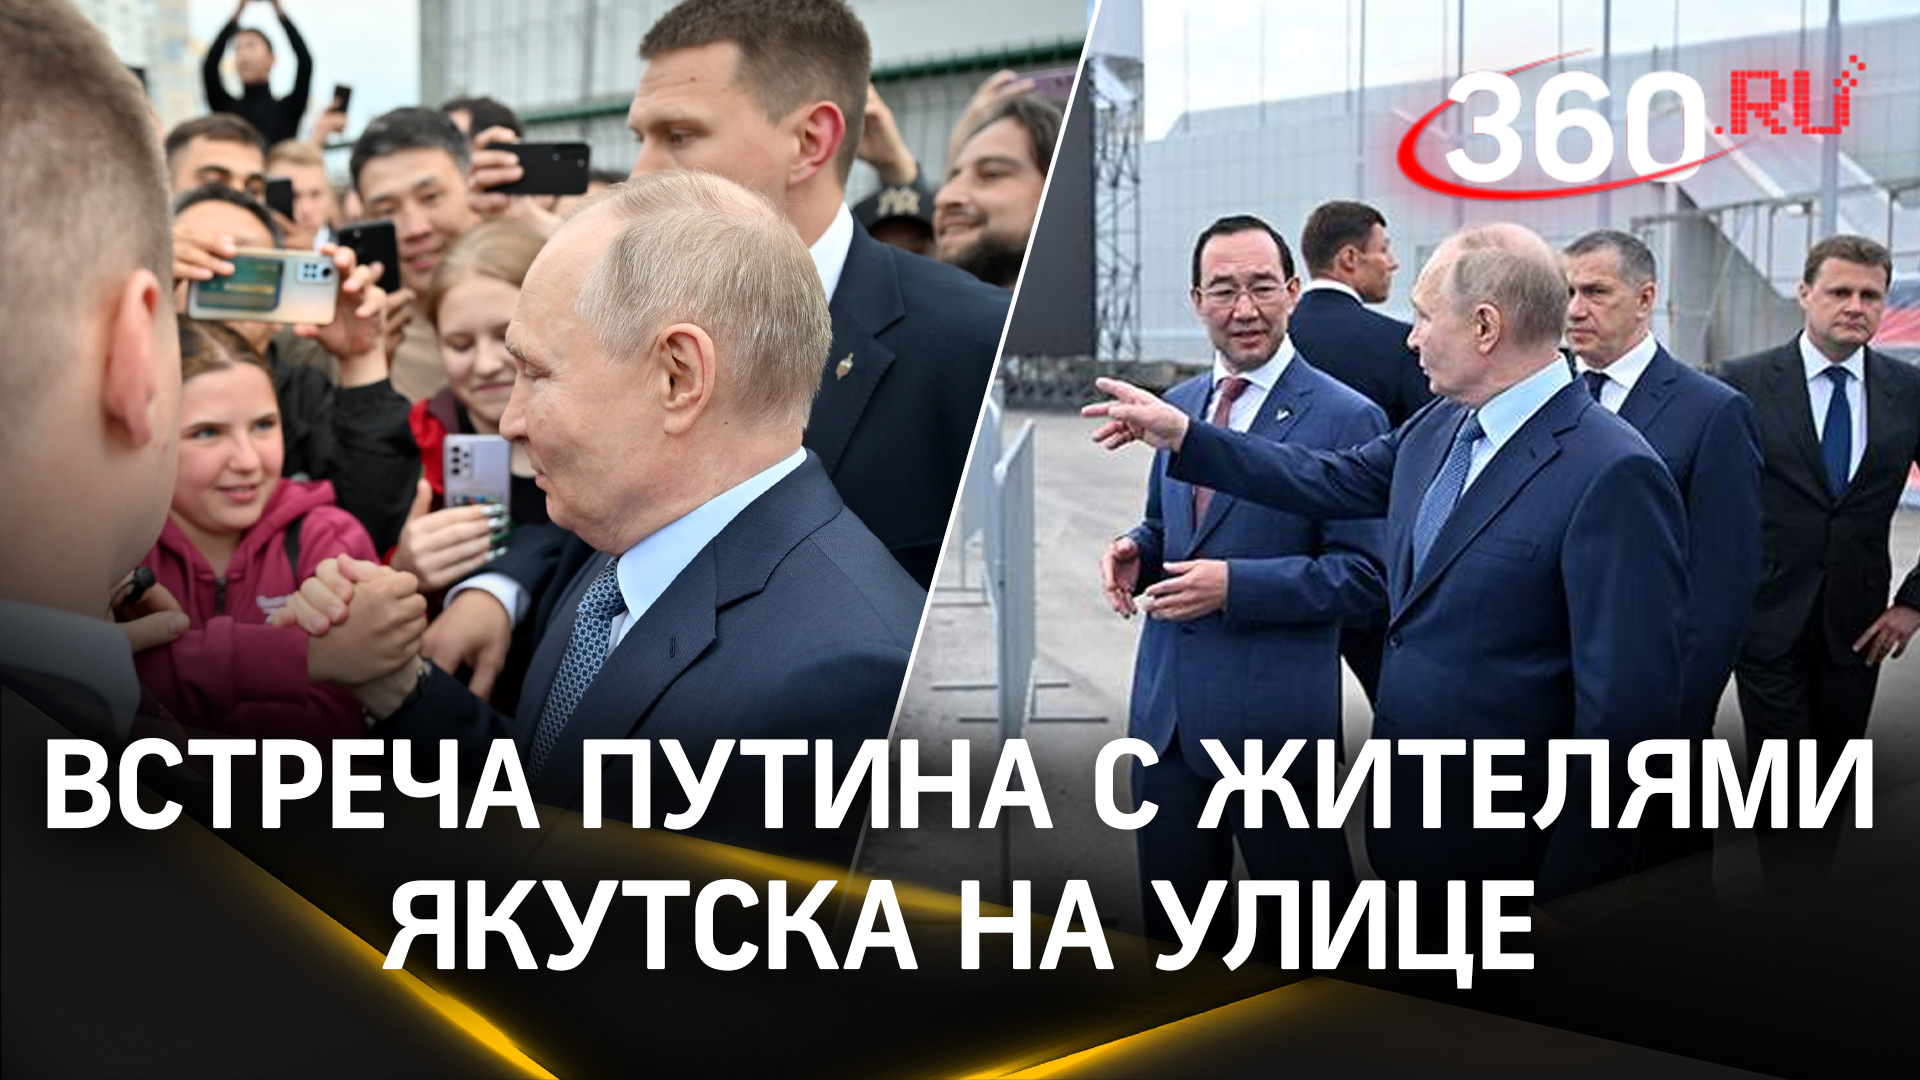 Владимир Путин узнал, что похож на якута - эмоциональная реакция жителей Якутска на встречу с презид